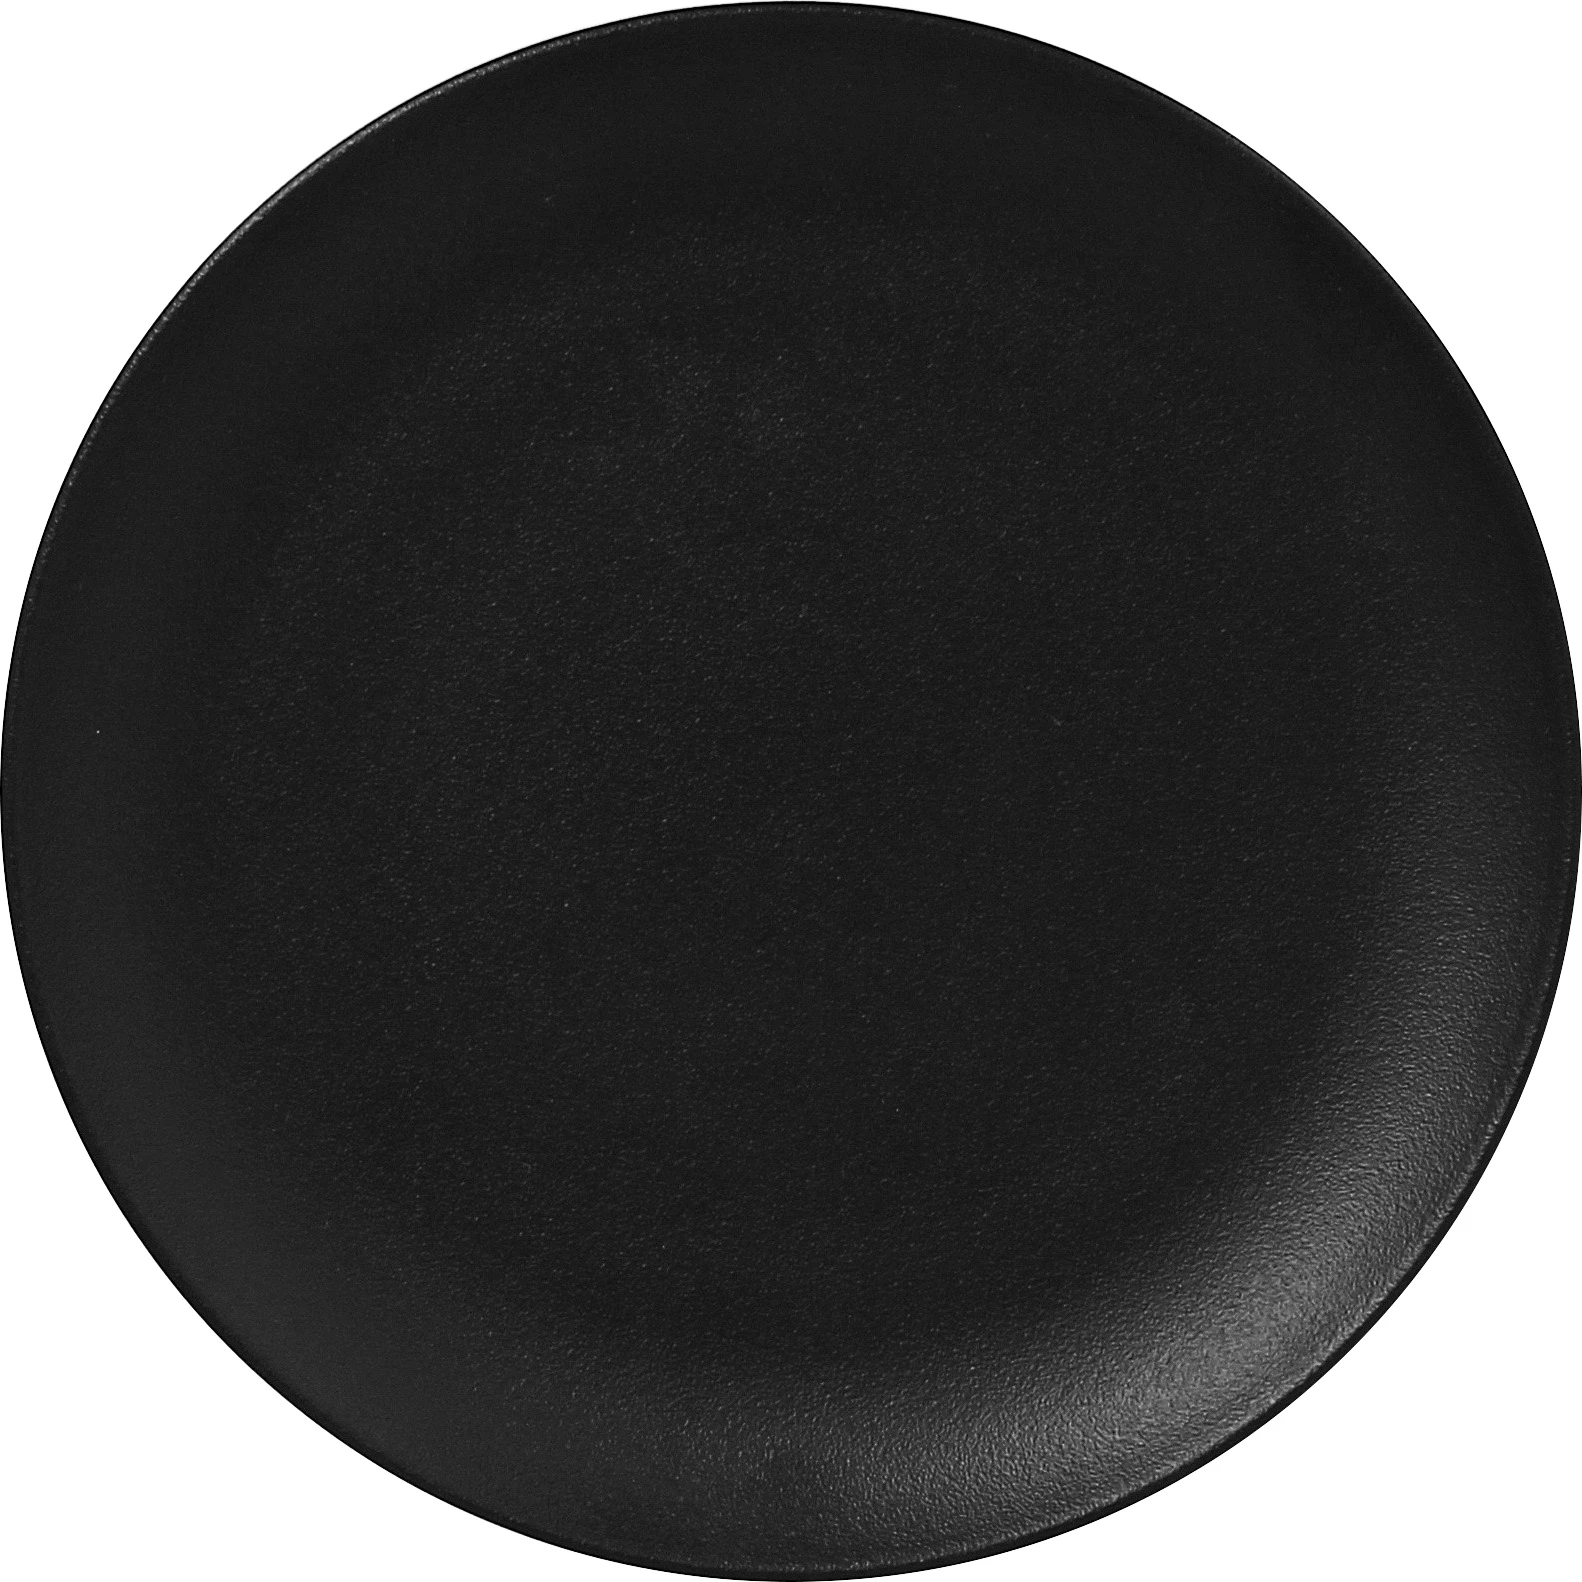 RAK Neofusion flad tallerken uden fane, sort, ø24 cm